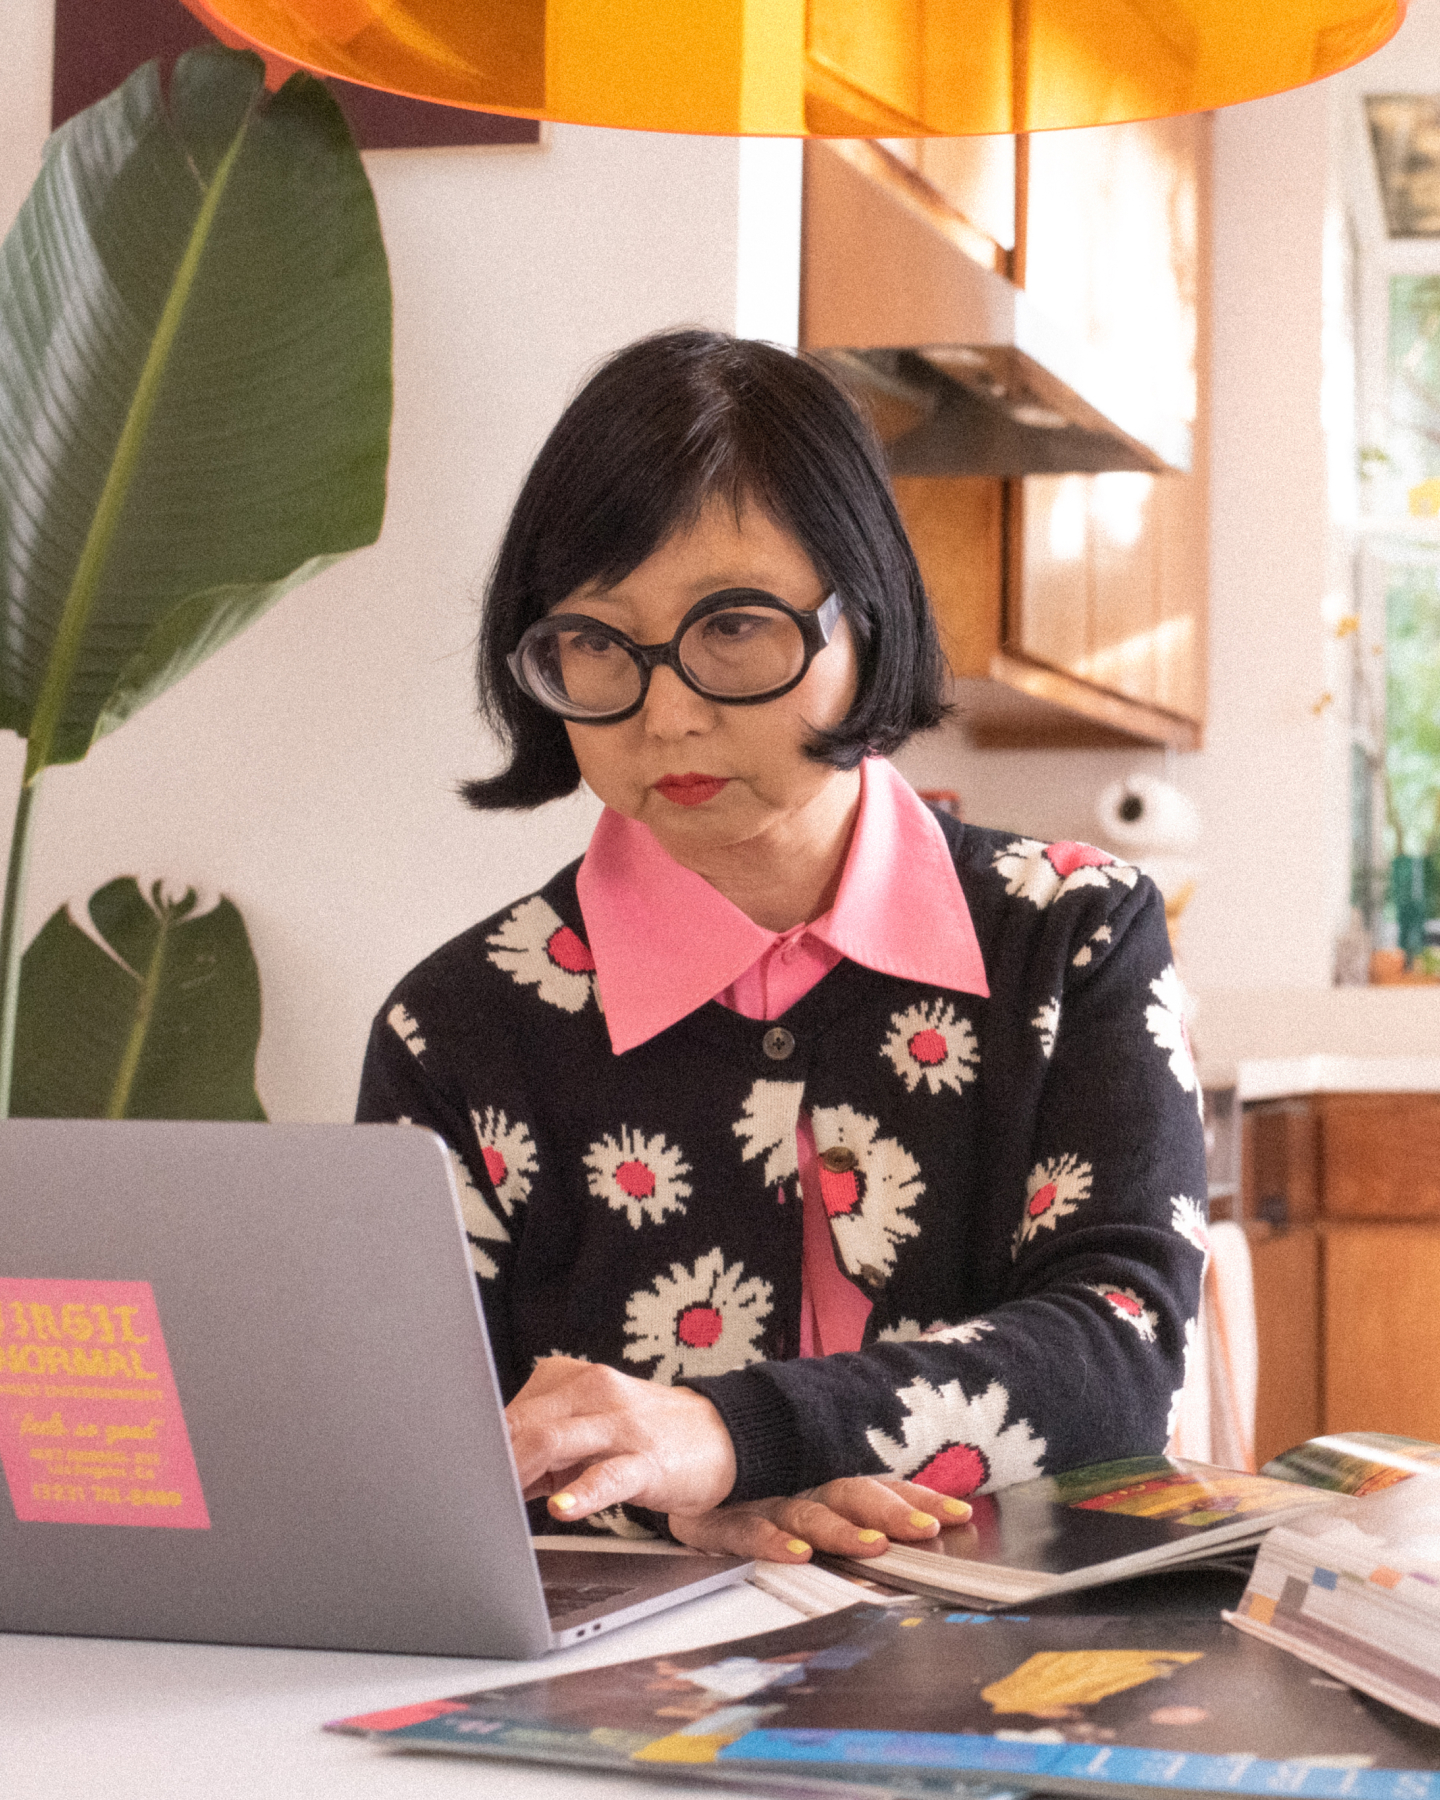 Shirley Kurata est assise devant un ordinateur